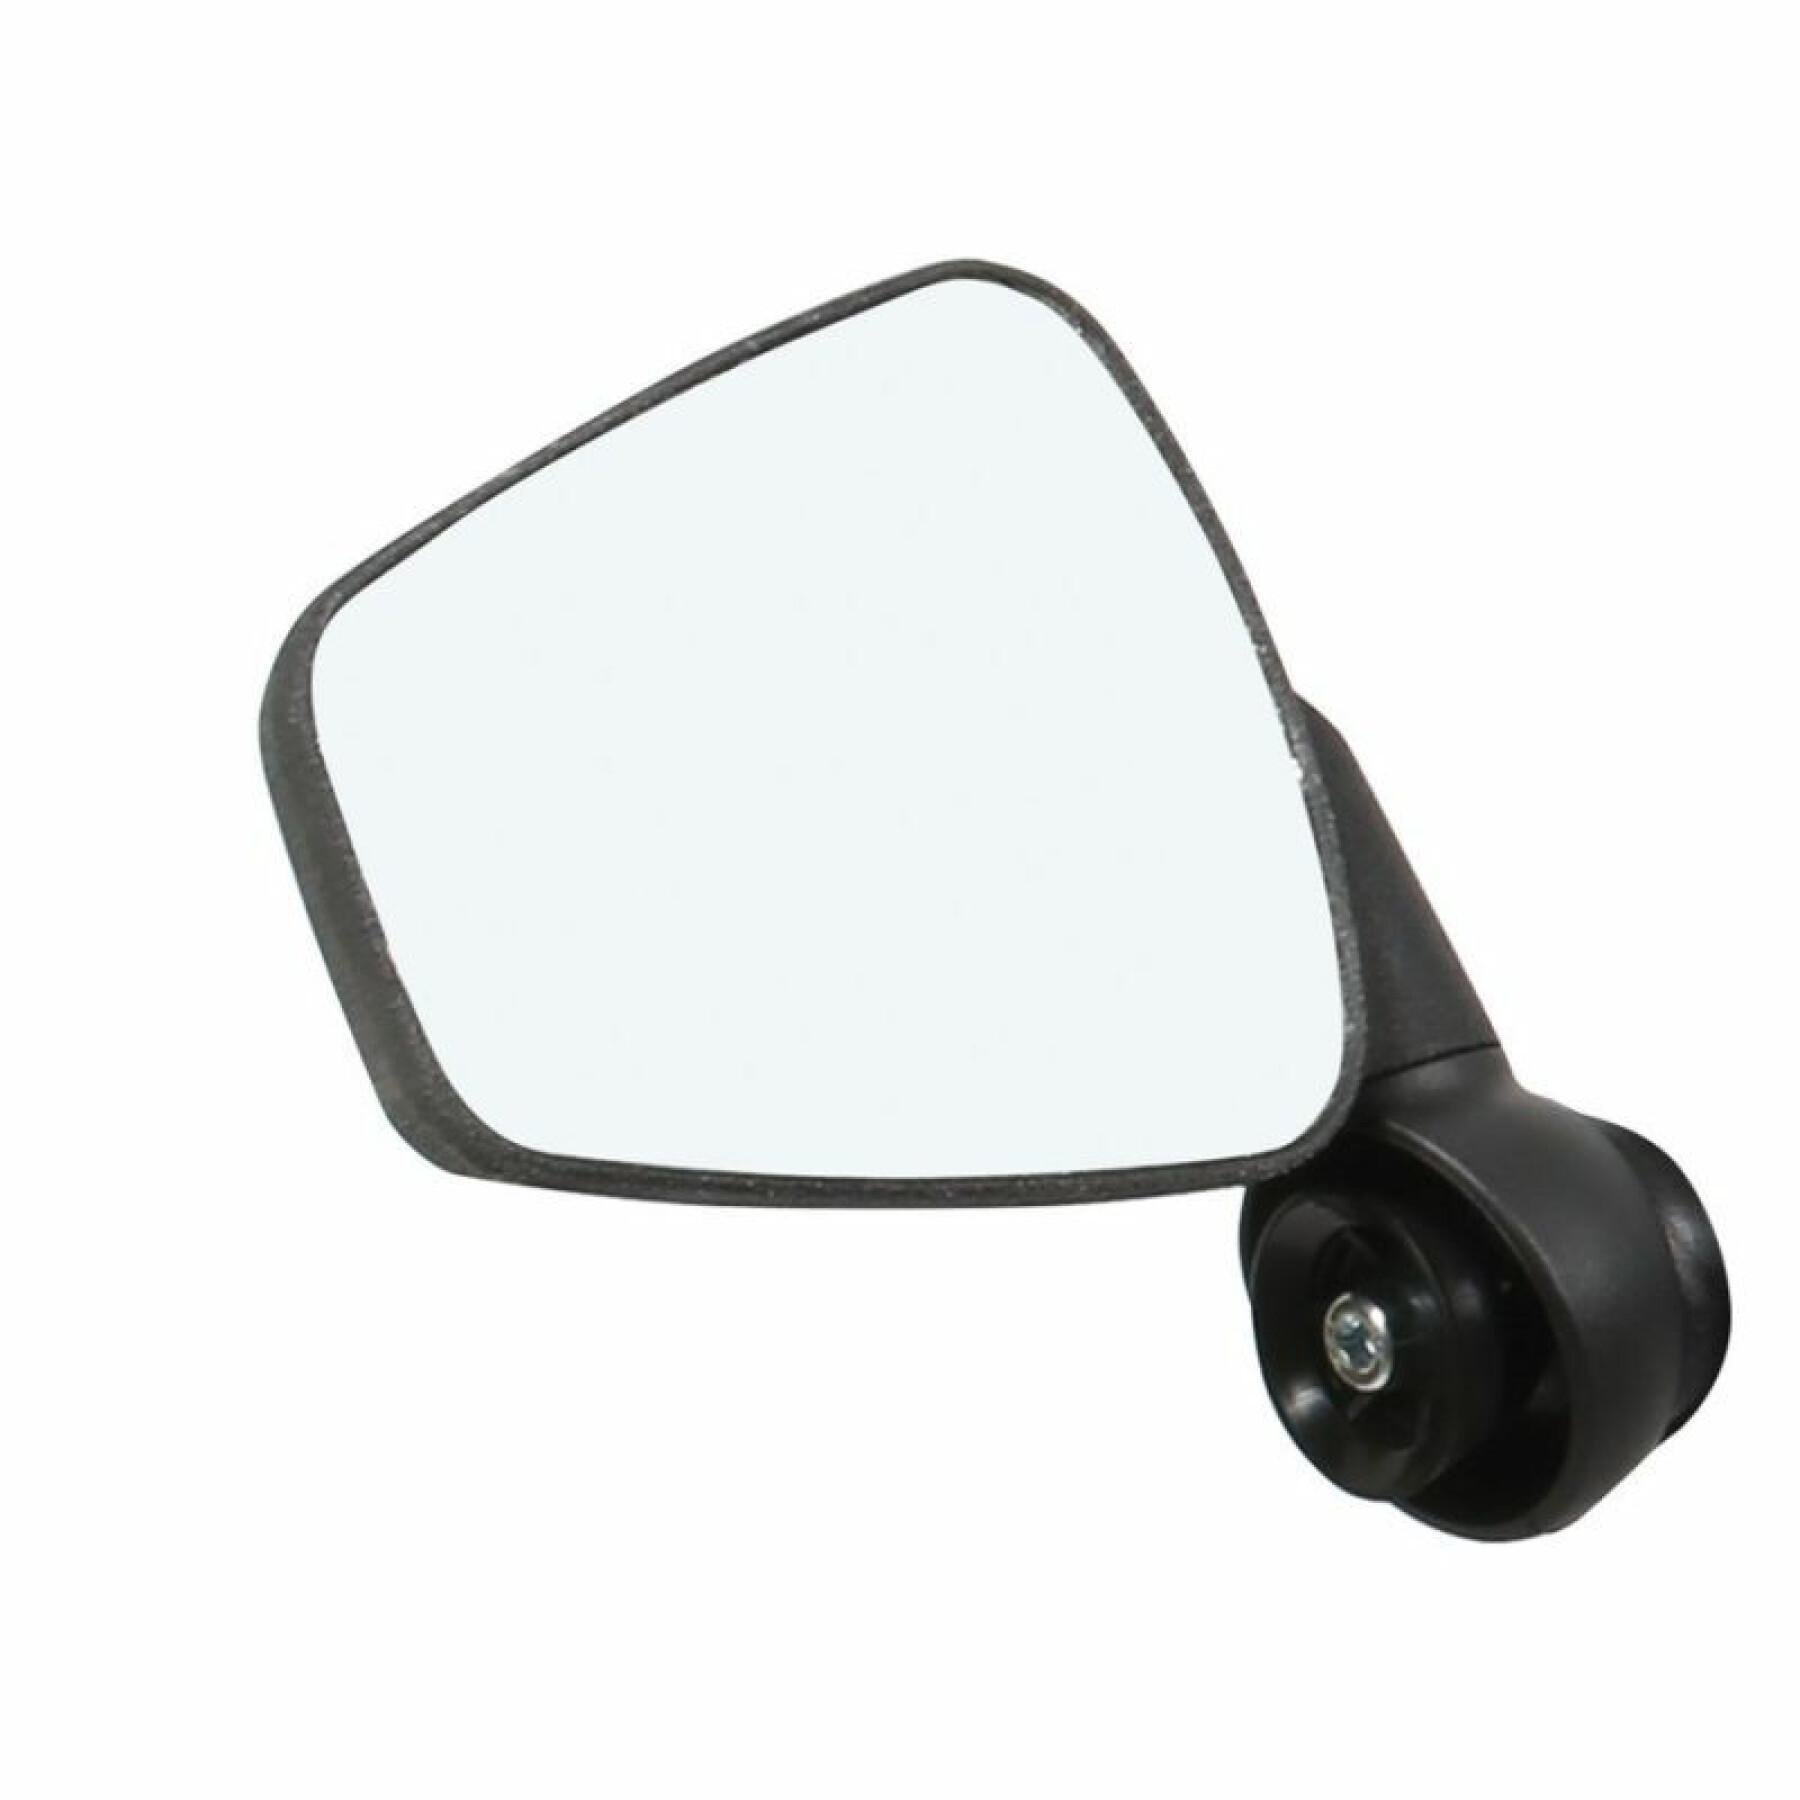 Right-left handle mirror Zefal cyclop